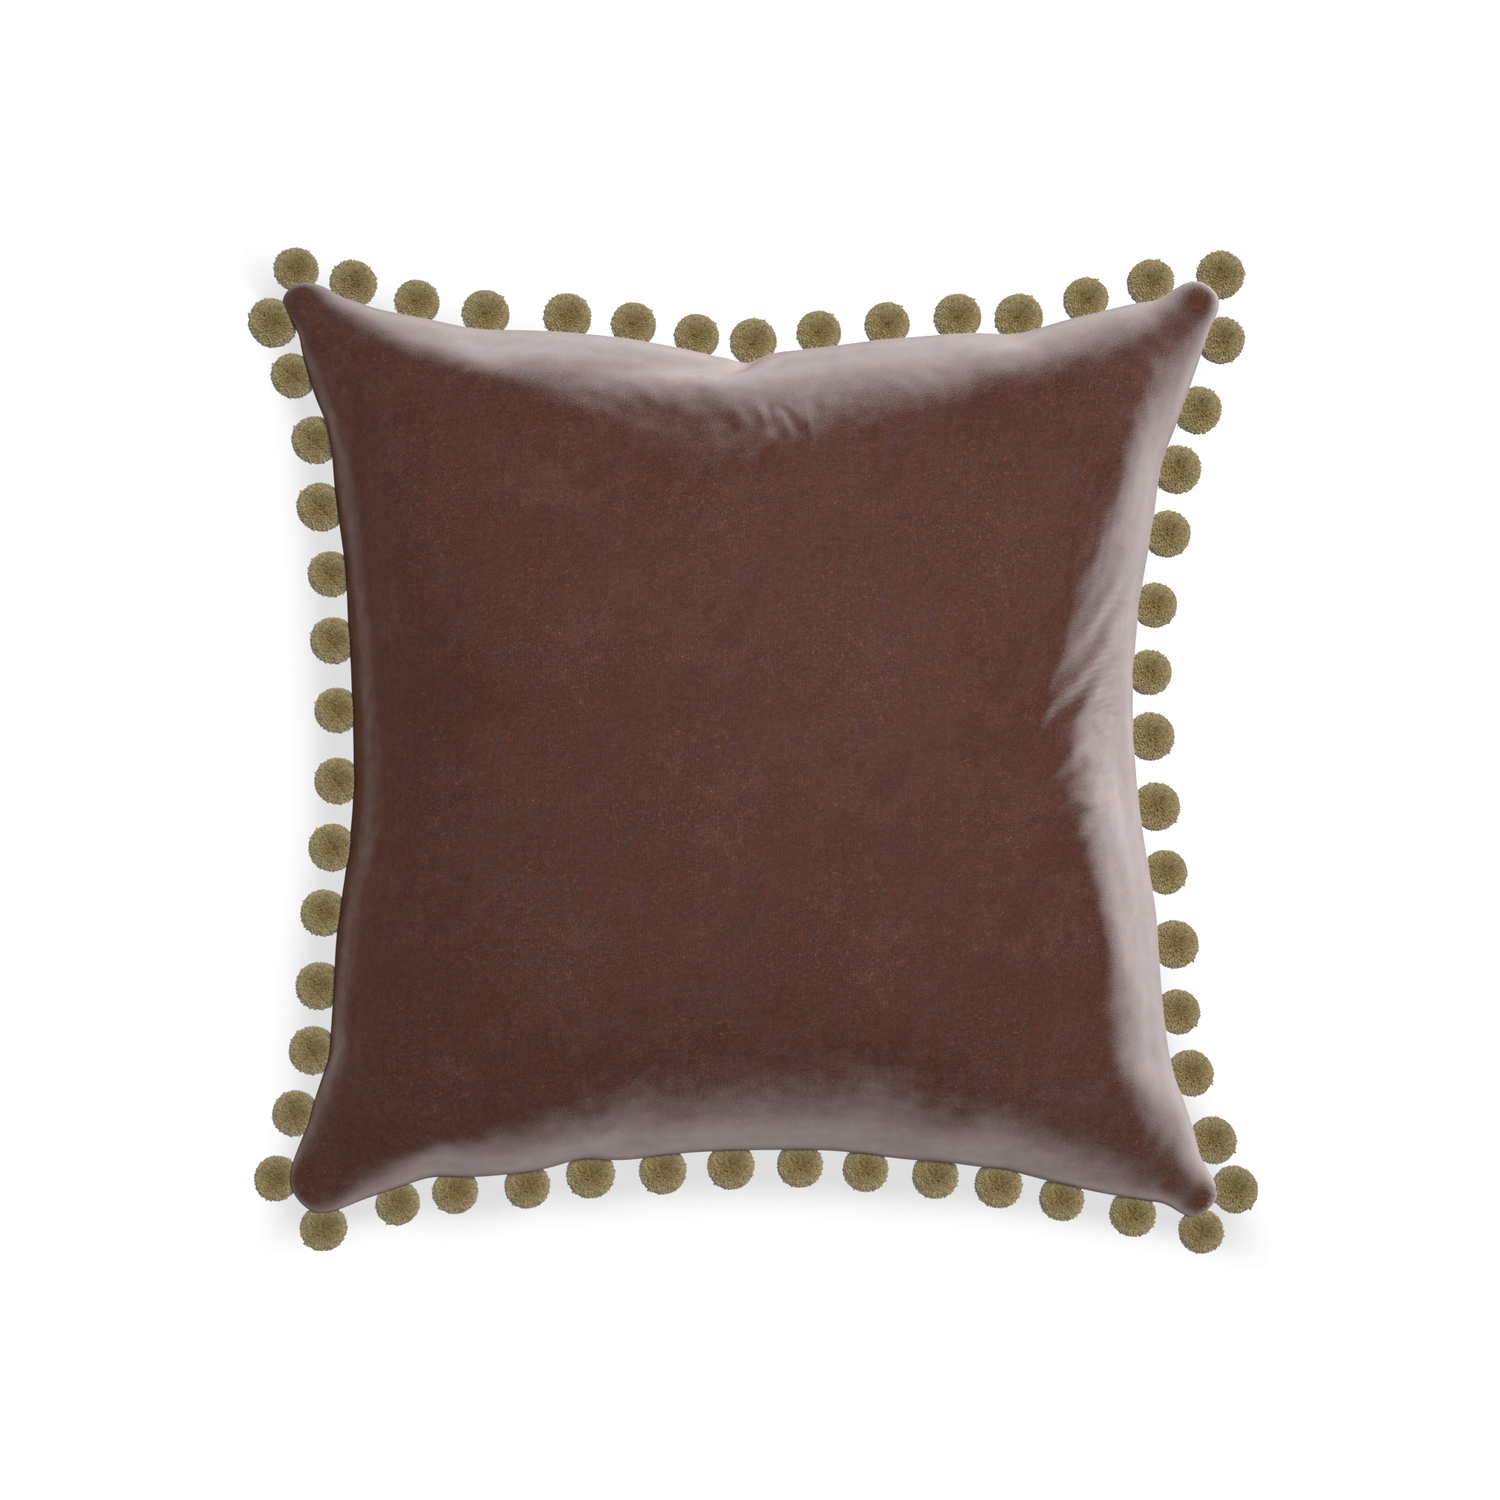 square brown velvet pillow with olive green pom poms